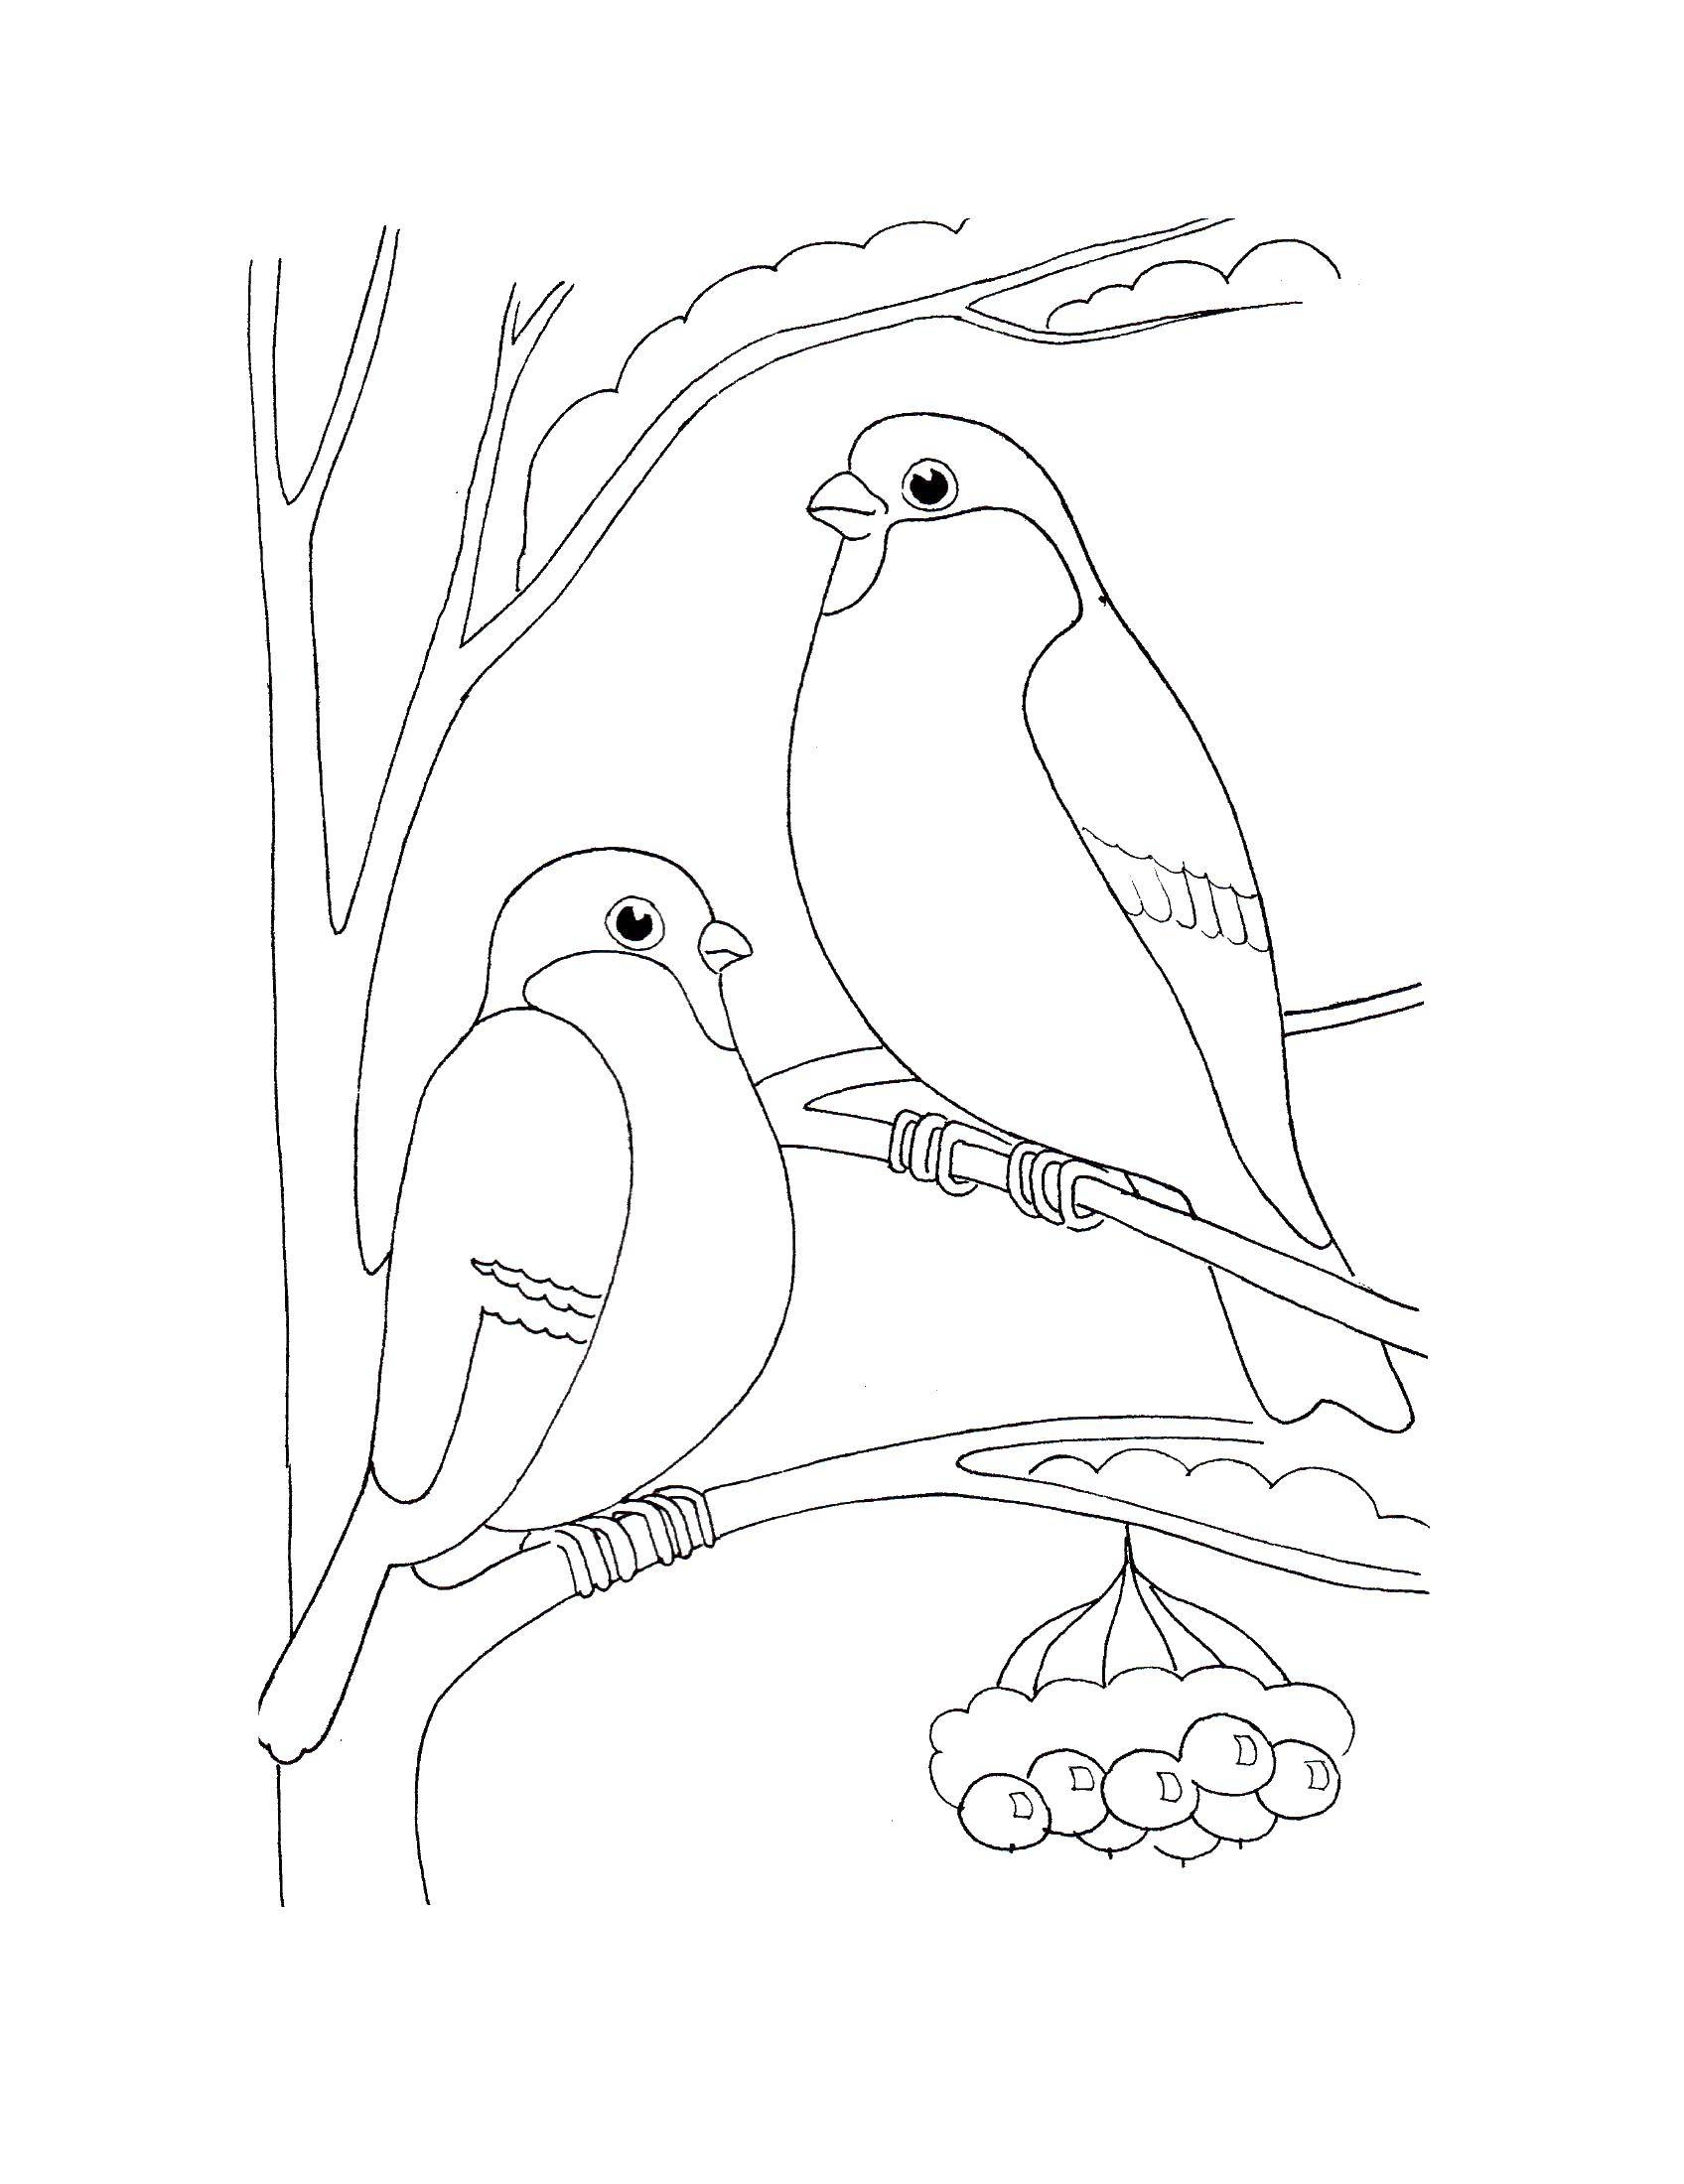 Стоковые фотографии по запросу Птички нарисованные карандашом